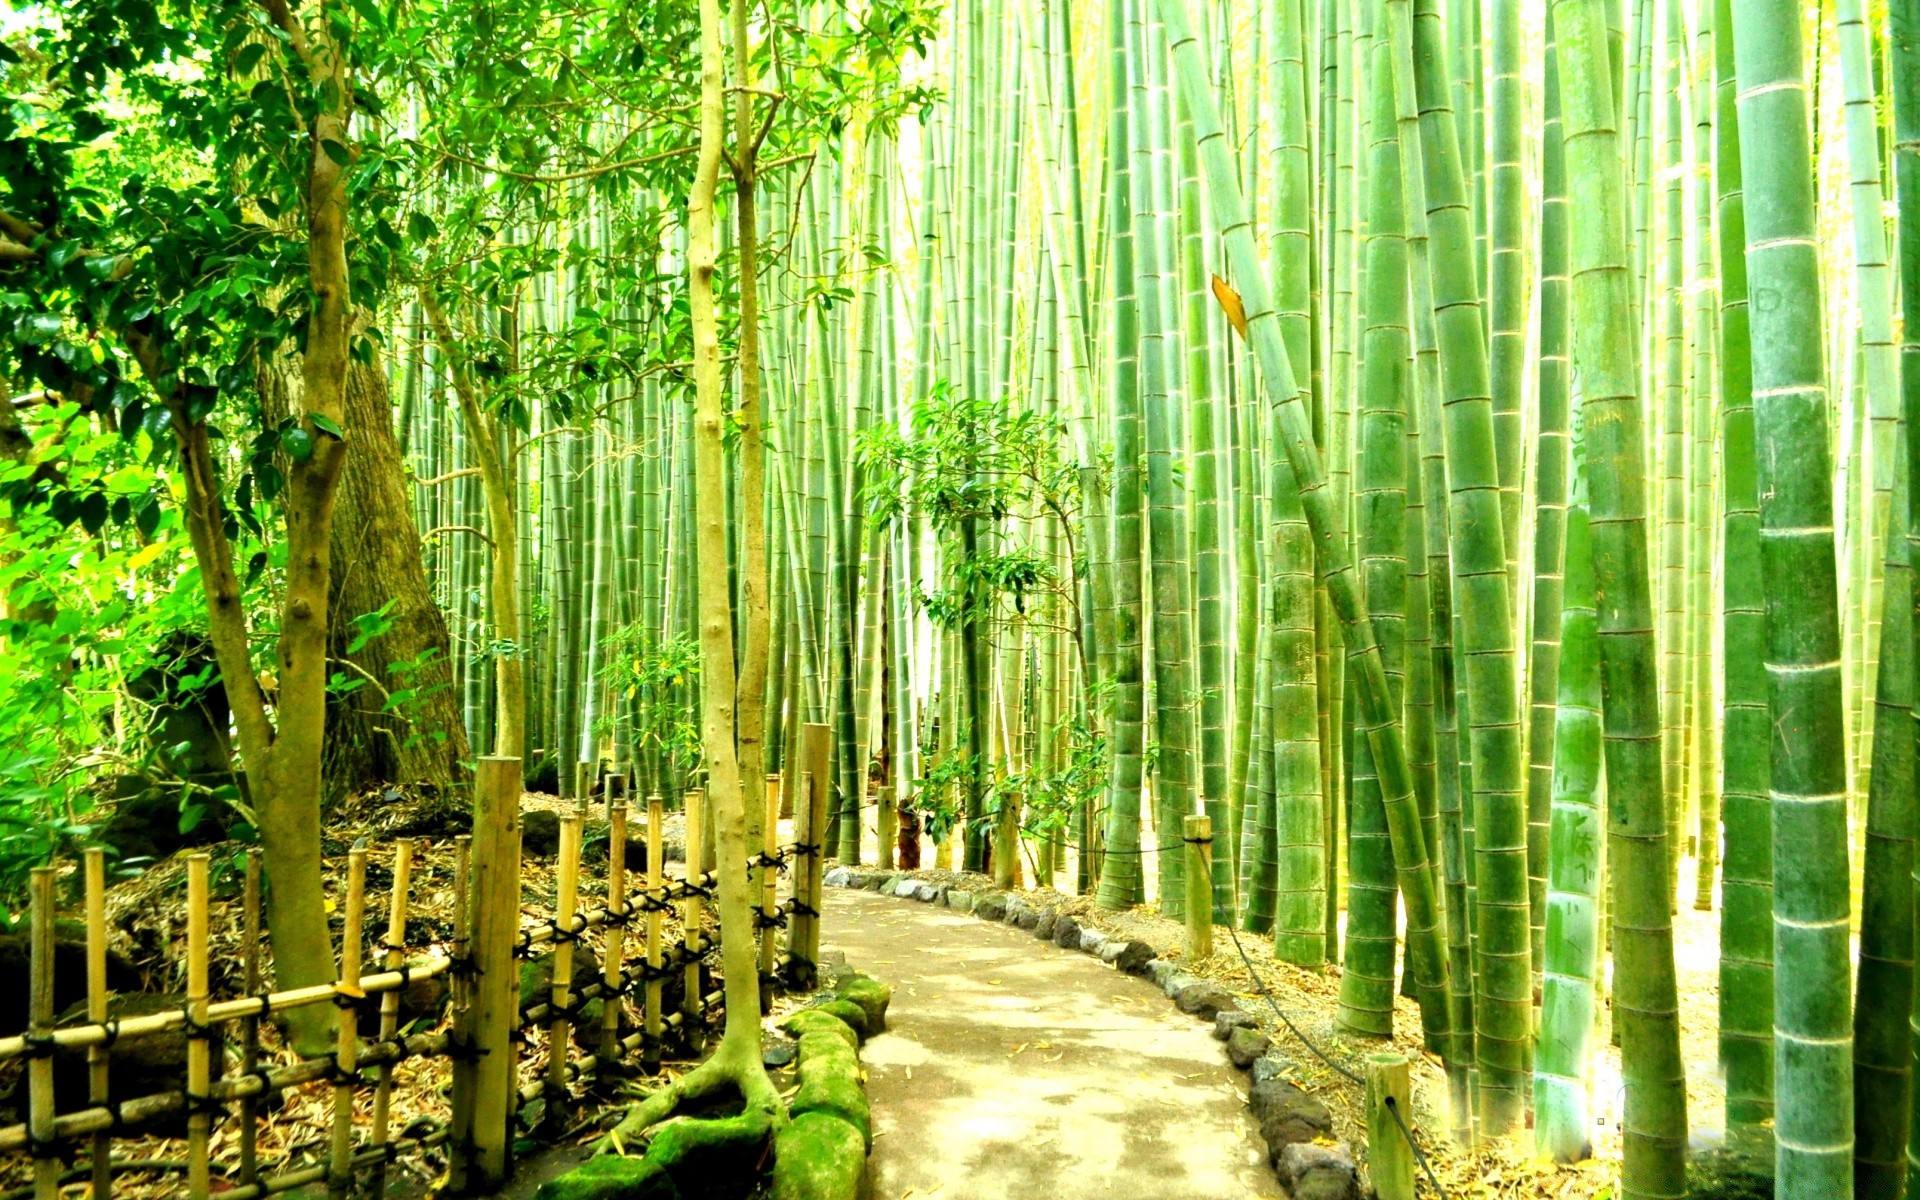 азия бамбук лист древесины природа дерево флора пышные пейзаж рост тропический парк среды лето сад на открытом воздухе хладнокровие